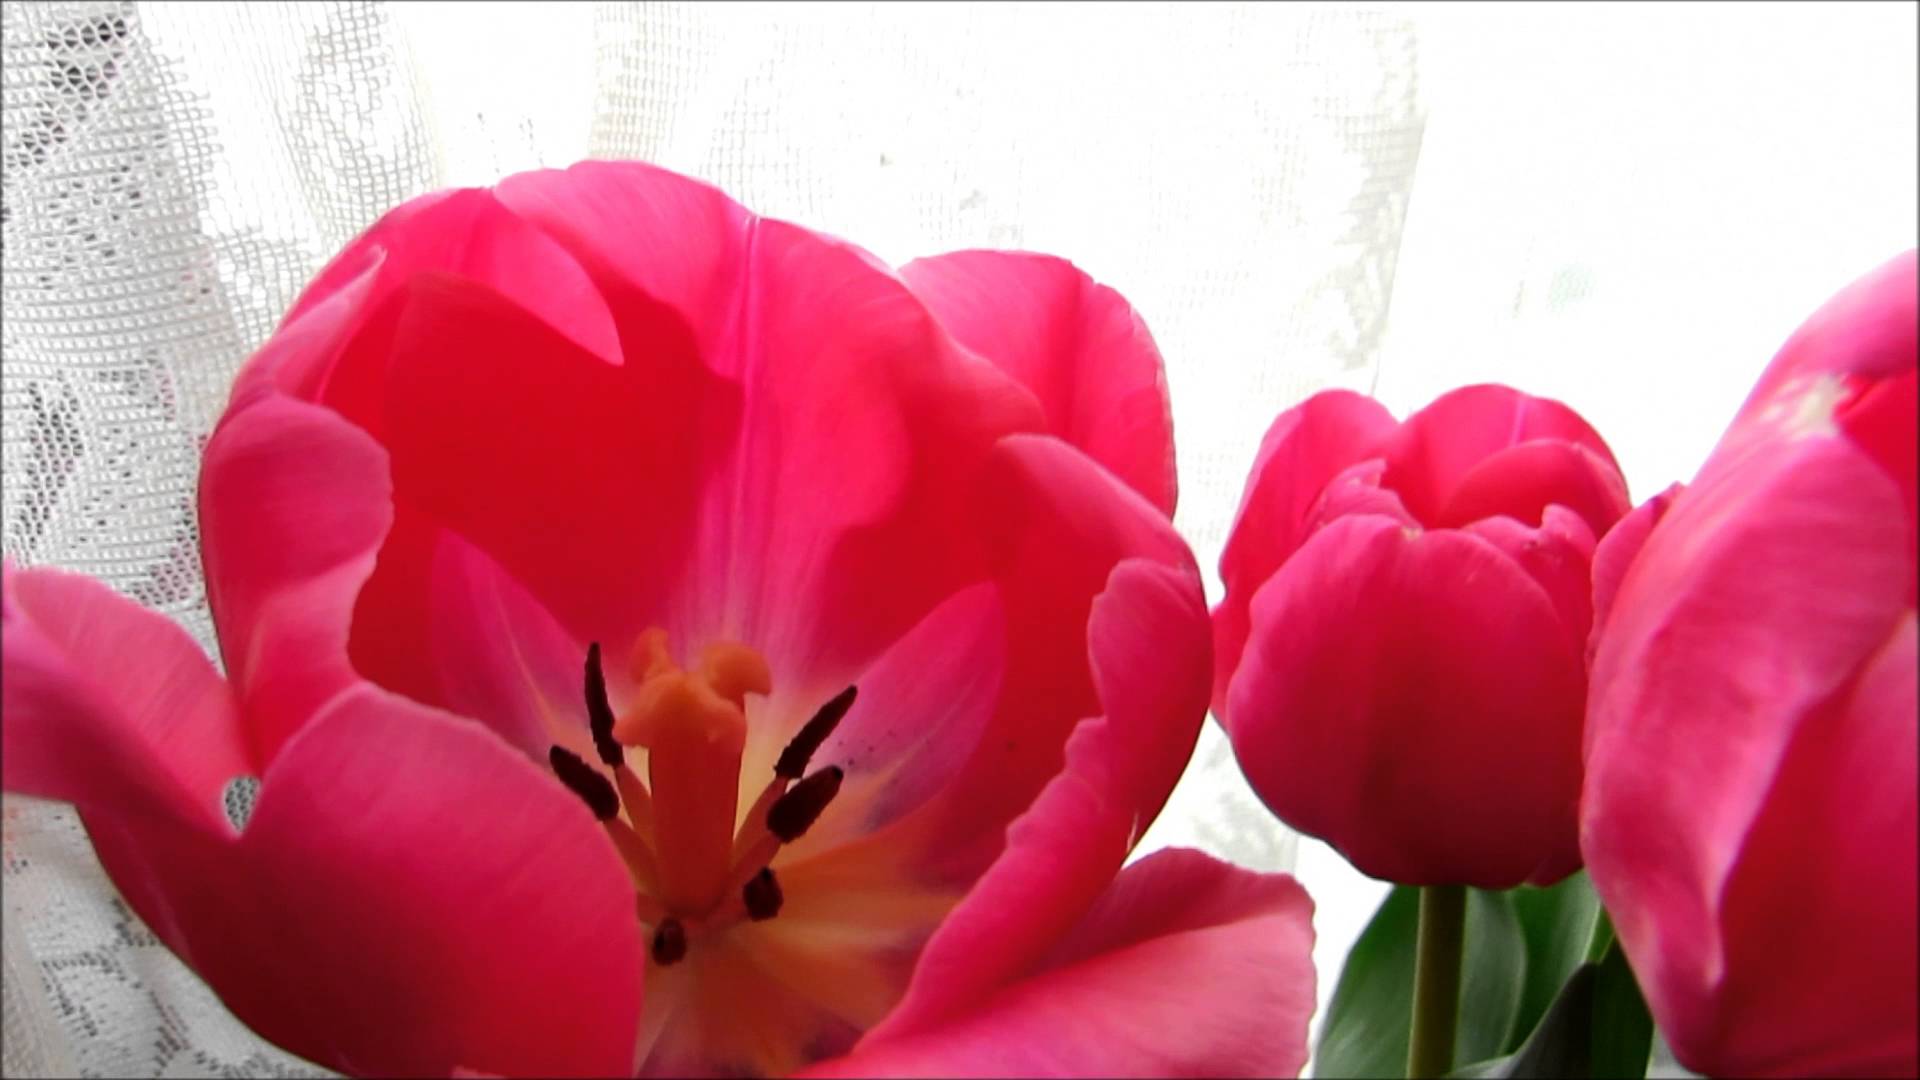 ✿⋟❤ღ*•⚜My beautiful pink tulip flowers⚜•*ღ❤⋞✿ - YouTube